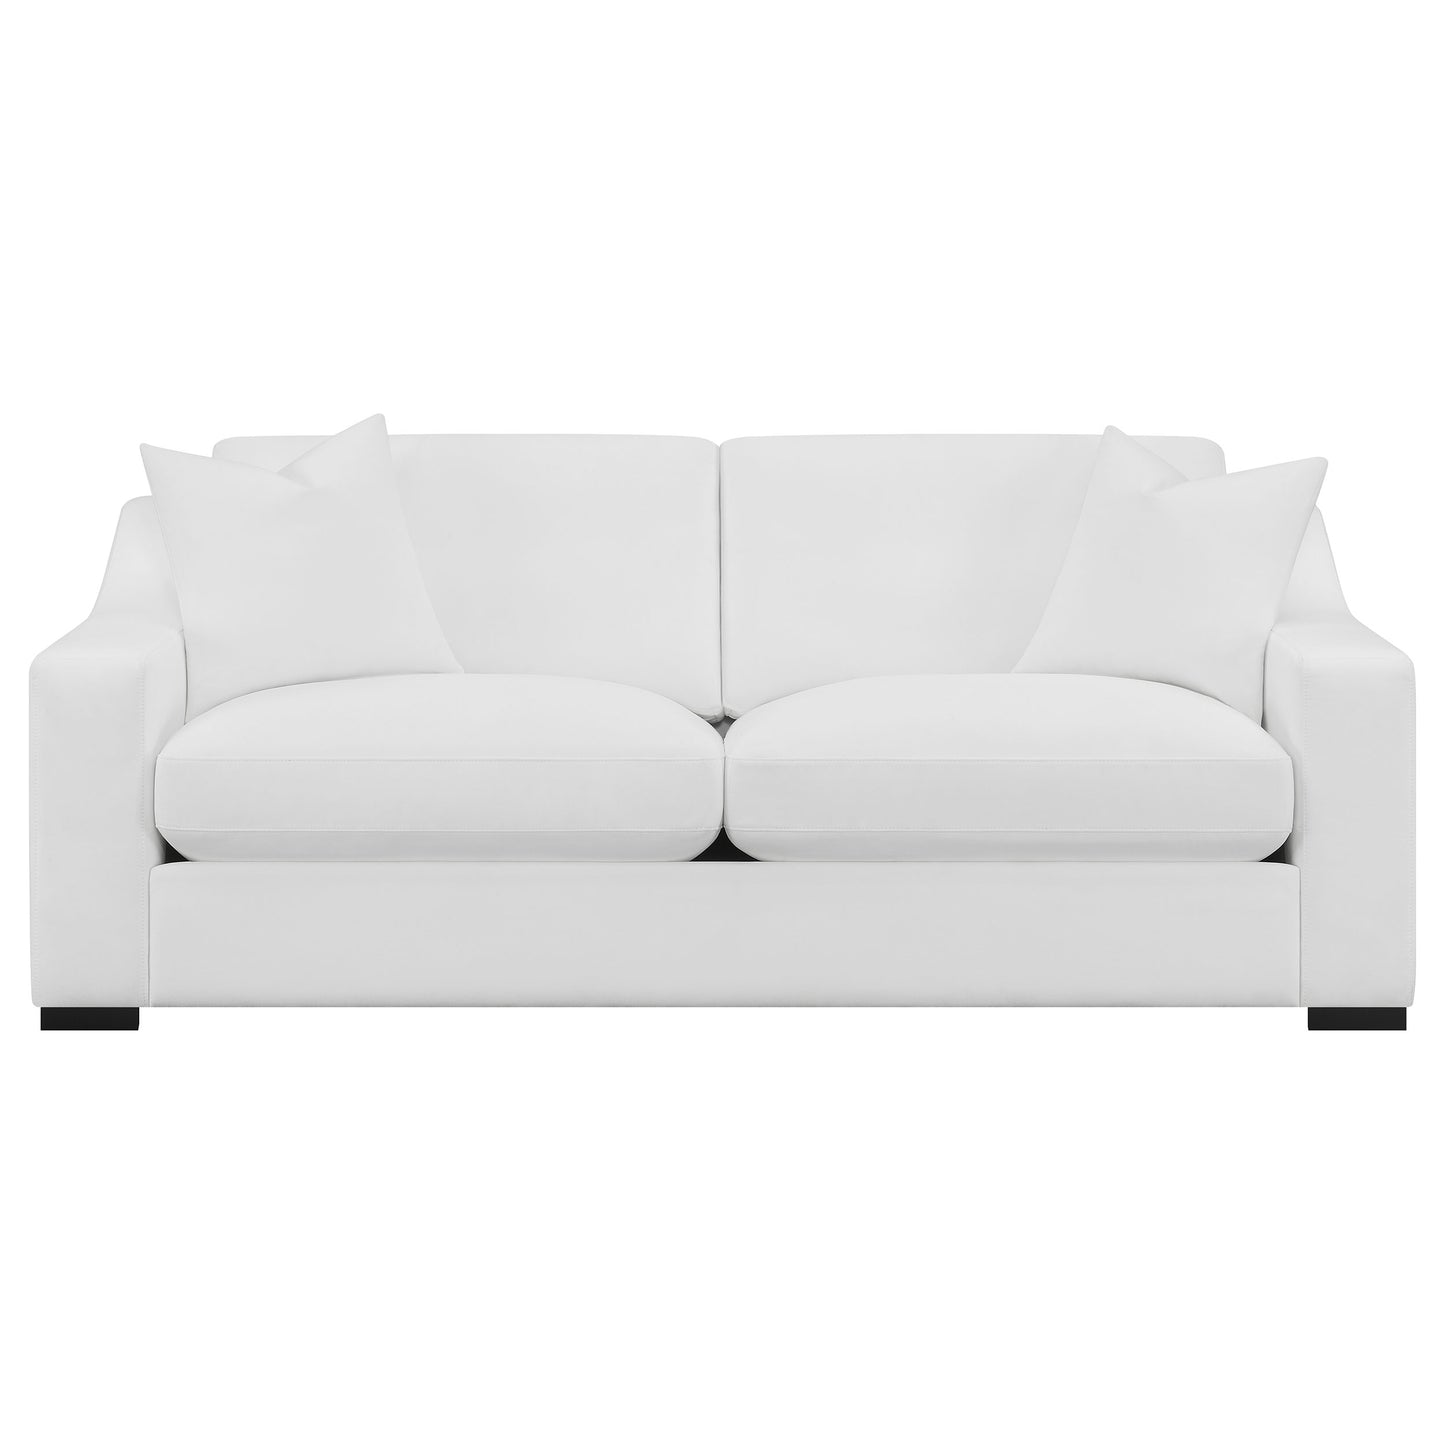 Ashlyn Upholstered Sloped Arms Sofa White